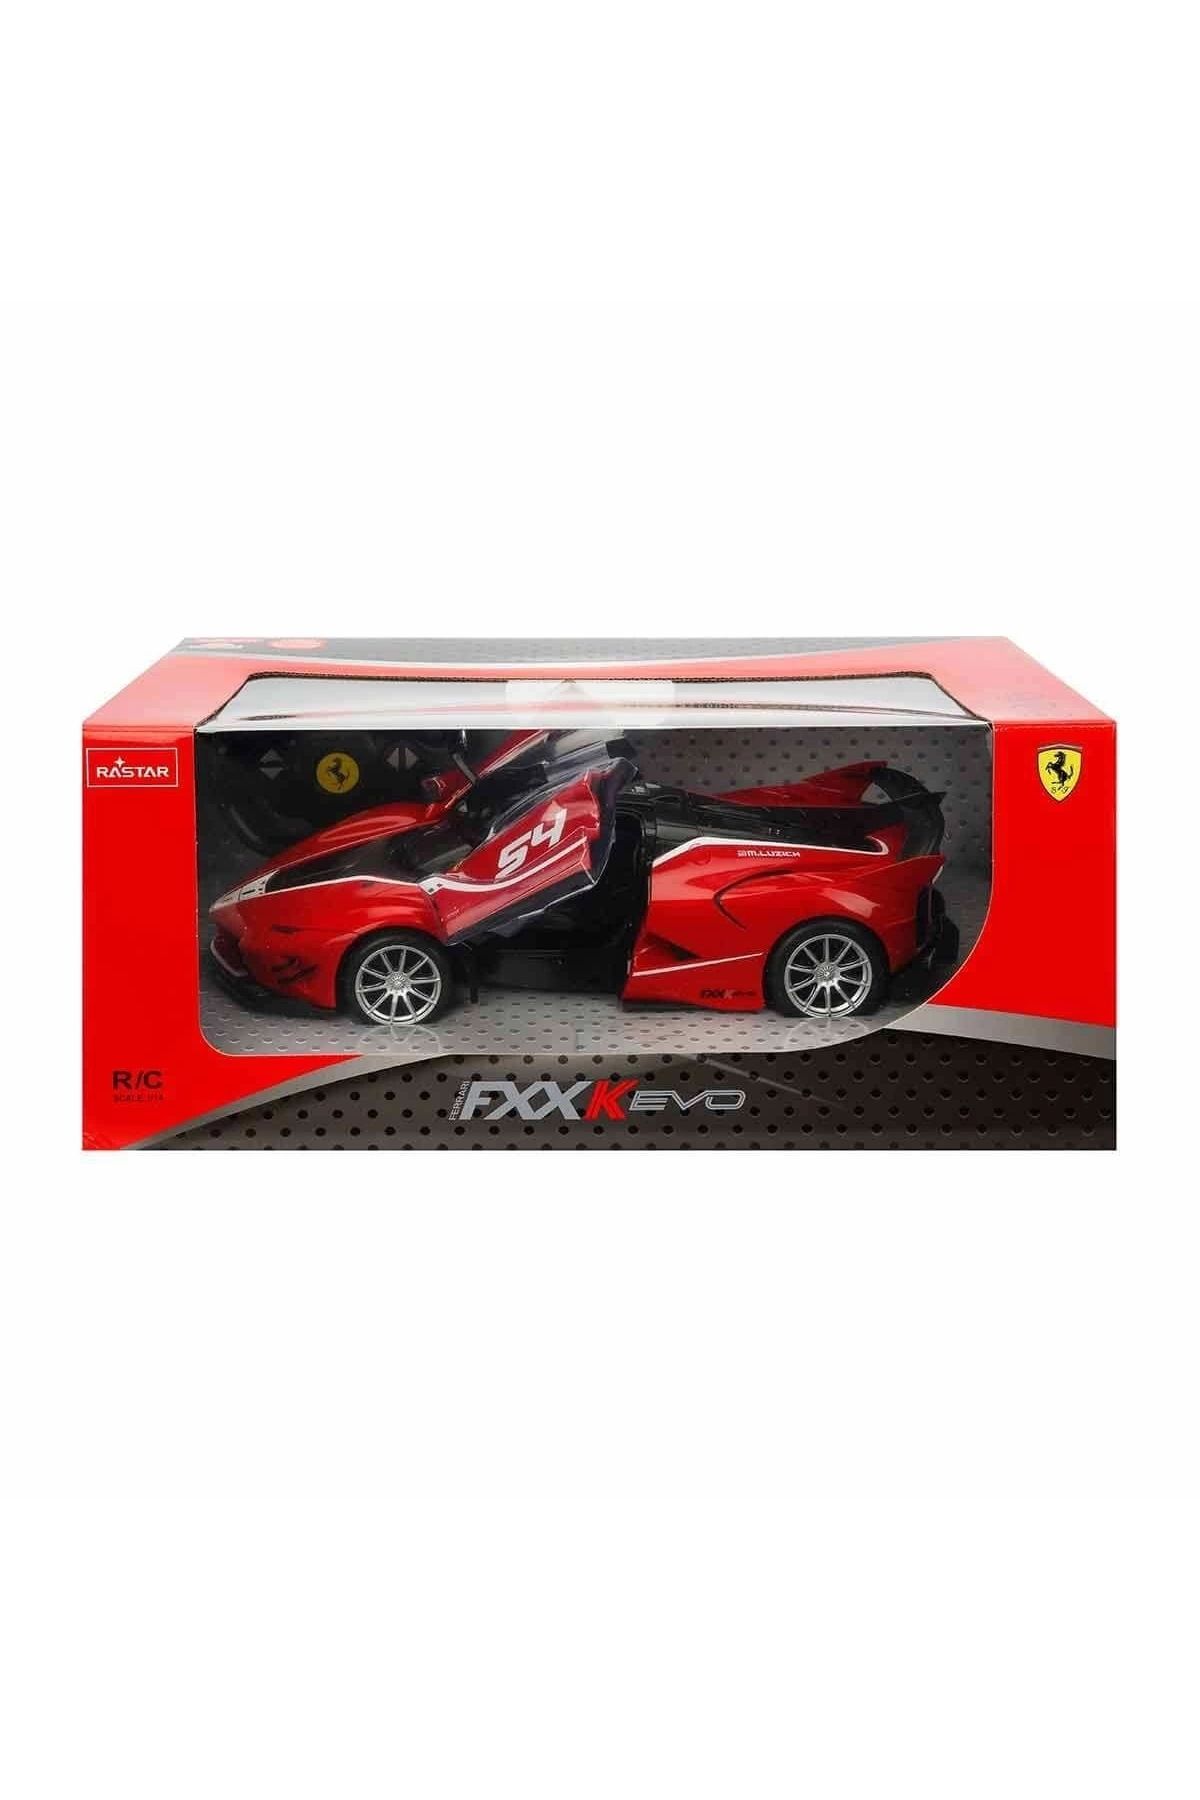 Sunman 79200 Uzaktan Kumandalı Ferrari FXX K Evo Araba 34 cm 1:14 -Sunman